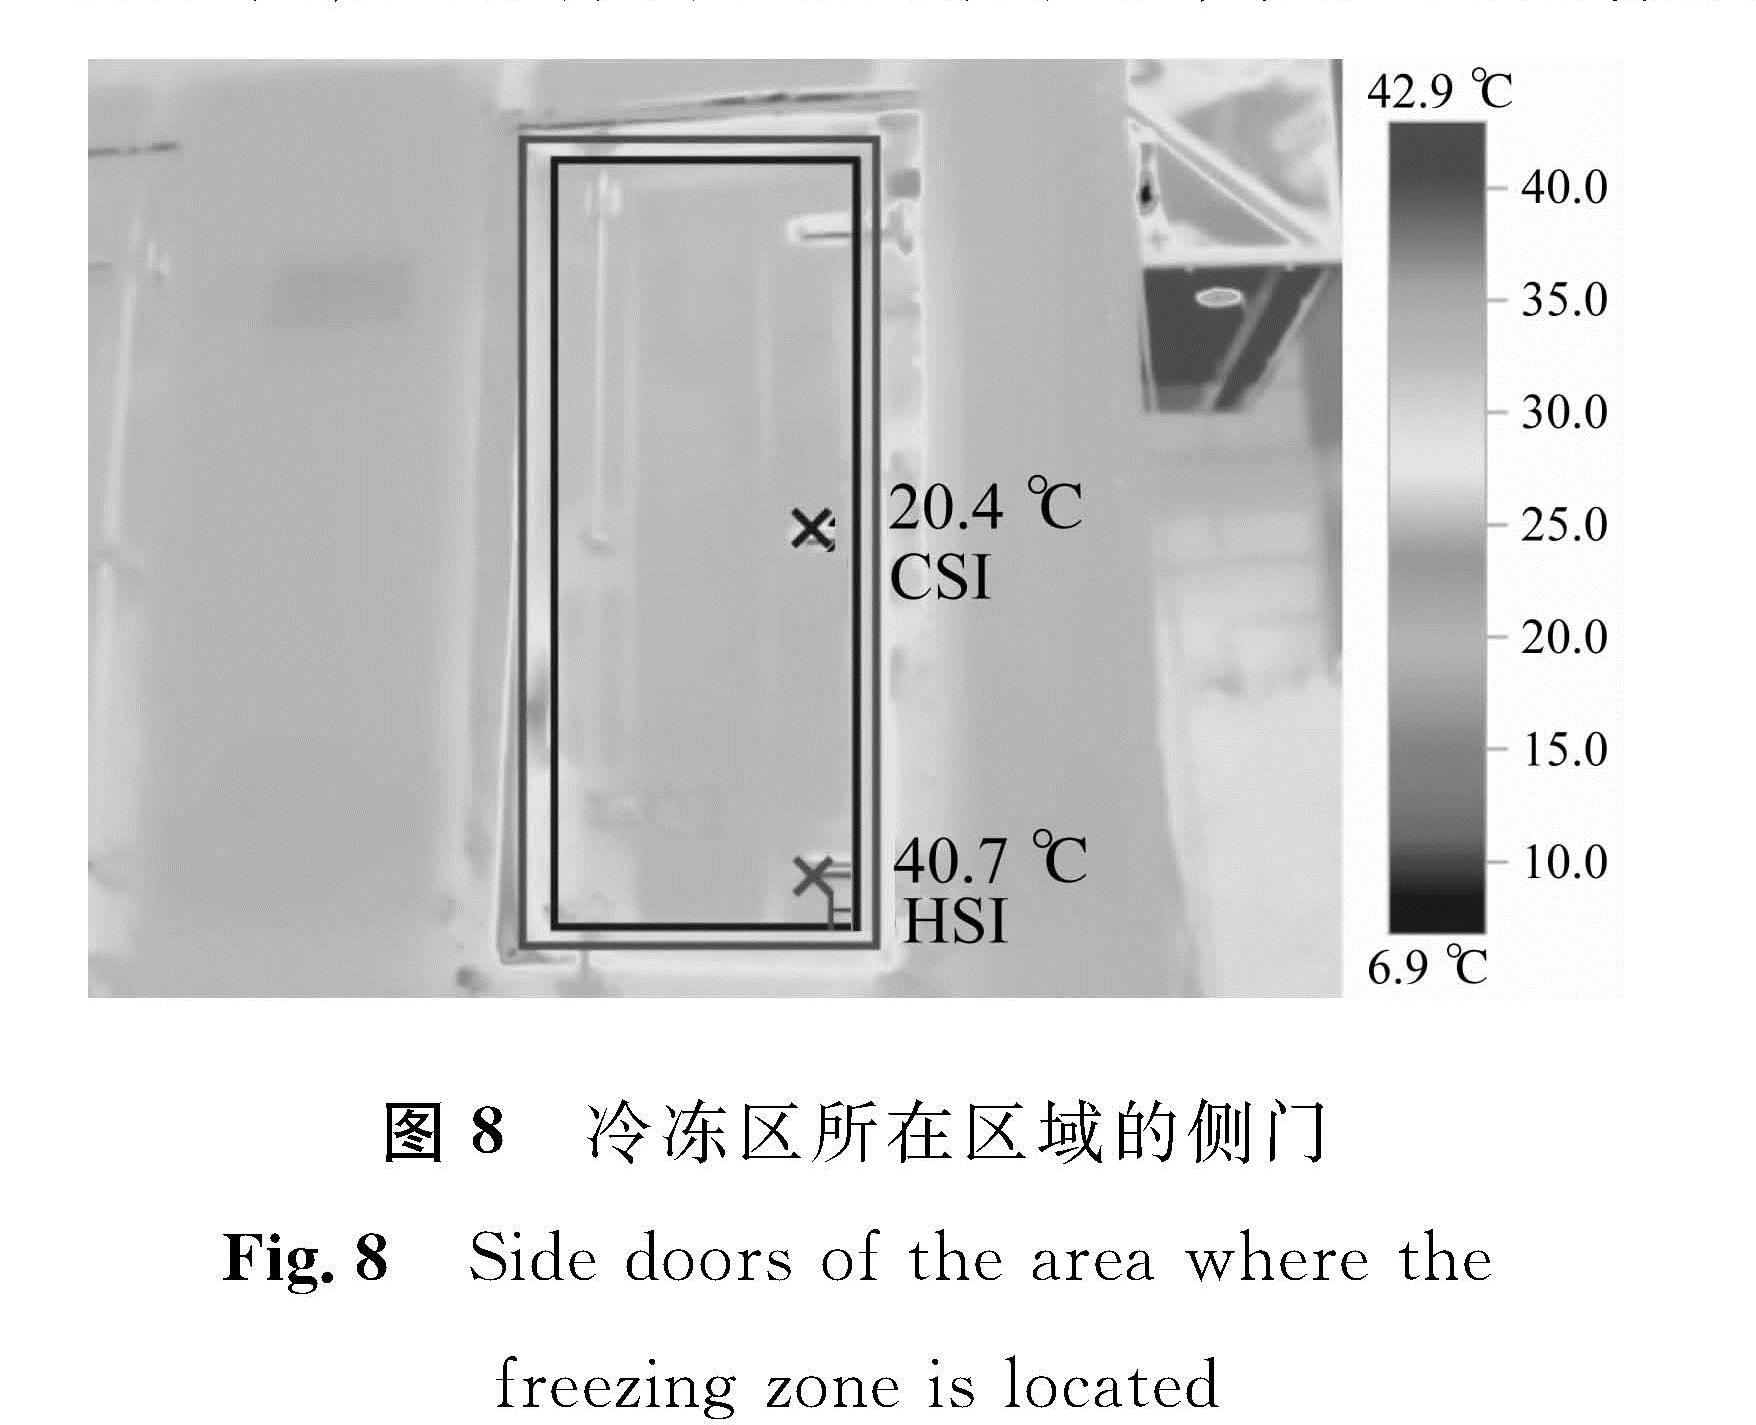 图8 冷冻区所在区域的侧门<br/>Fig.8 Side doors of the area where the freezing zone is located